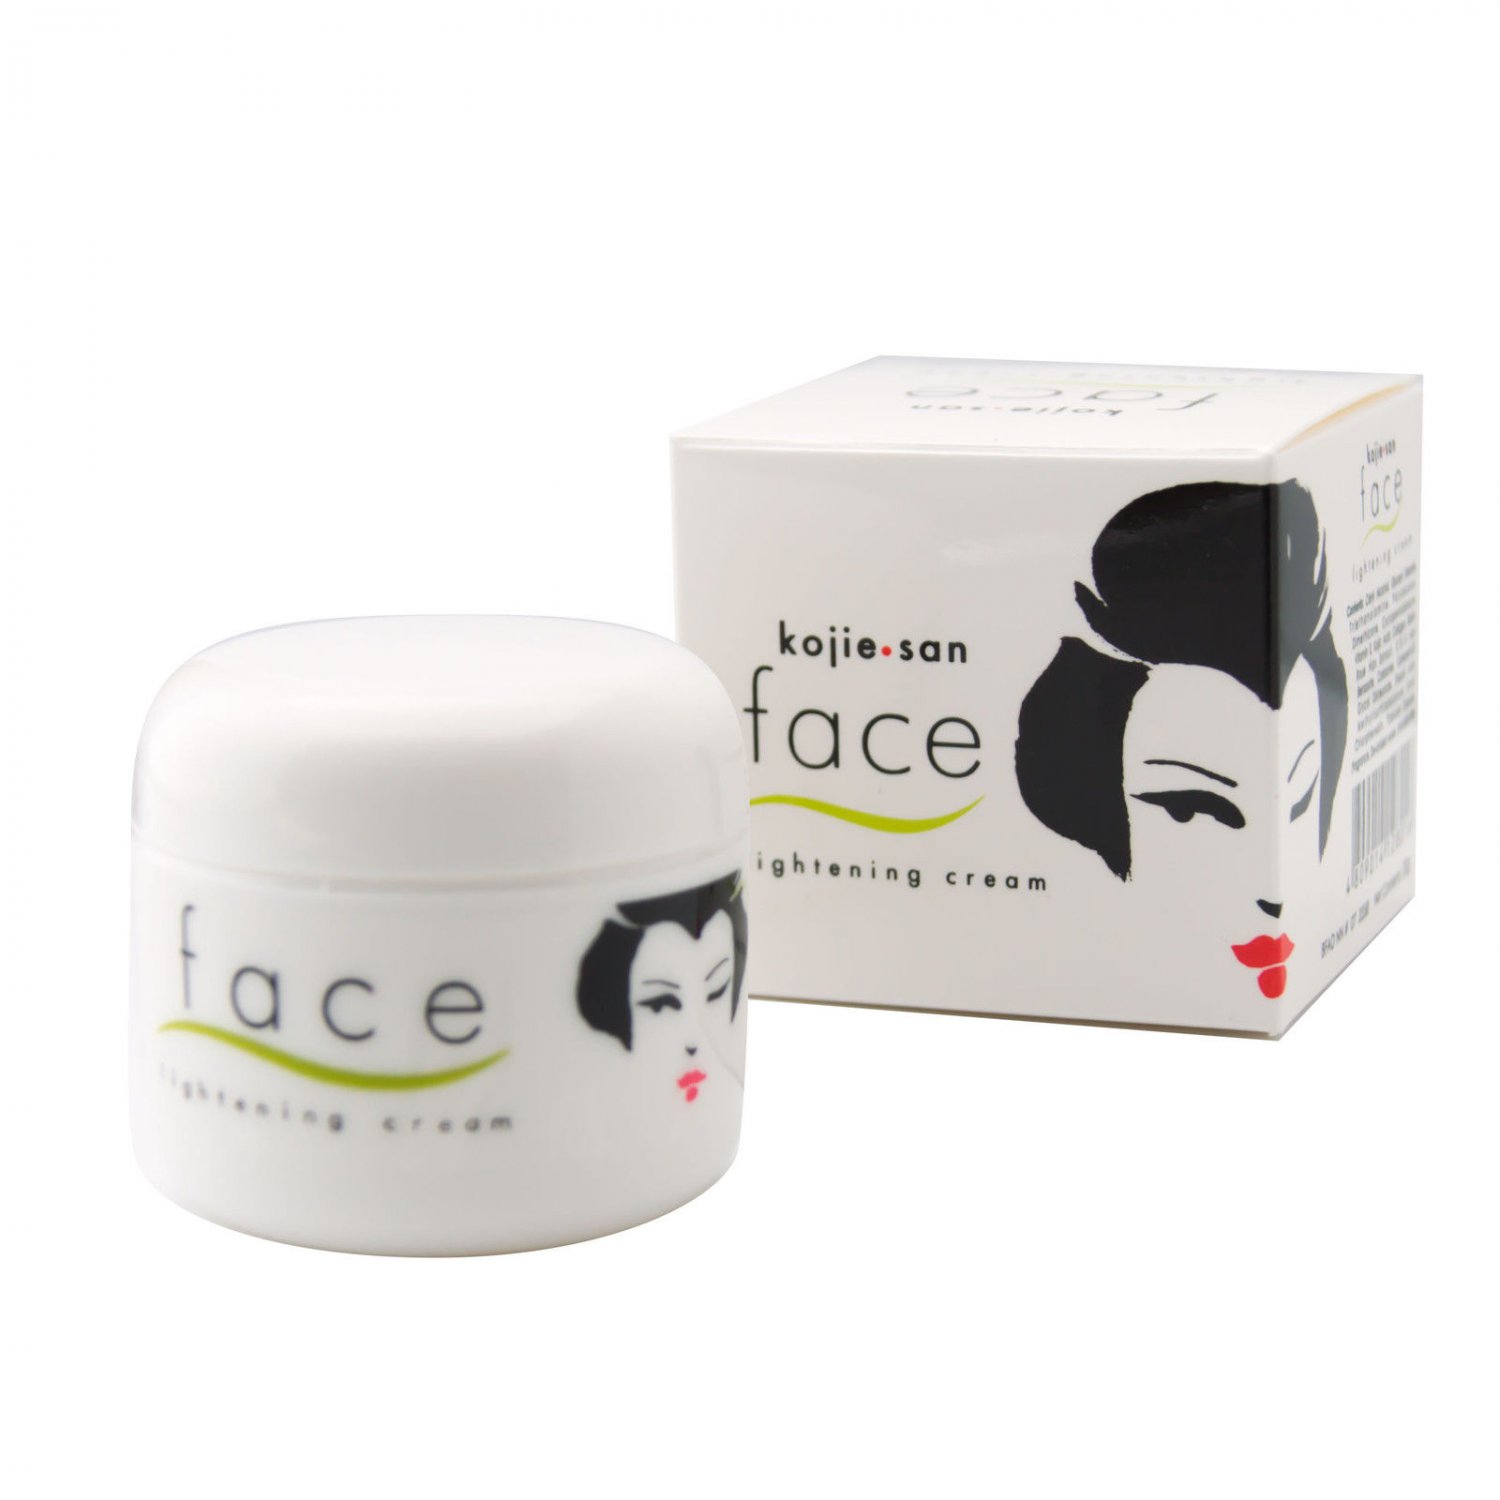 Kojie San Face Lightening Cream Image 1